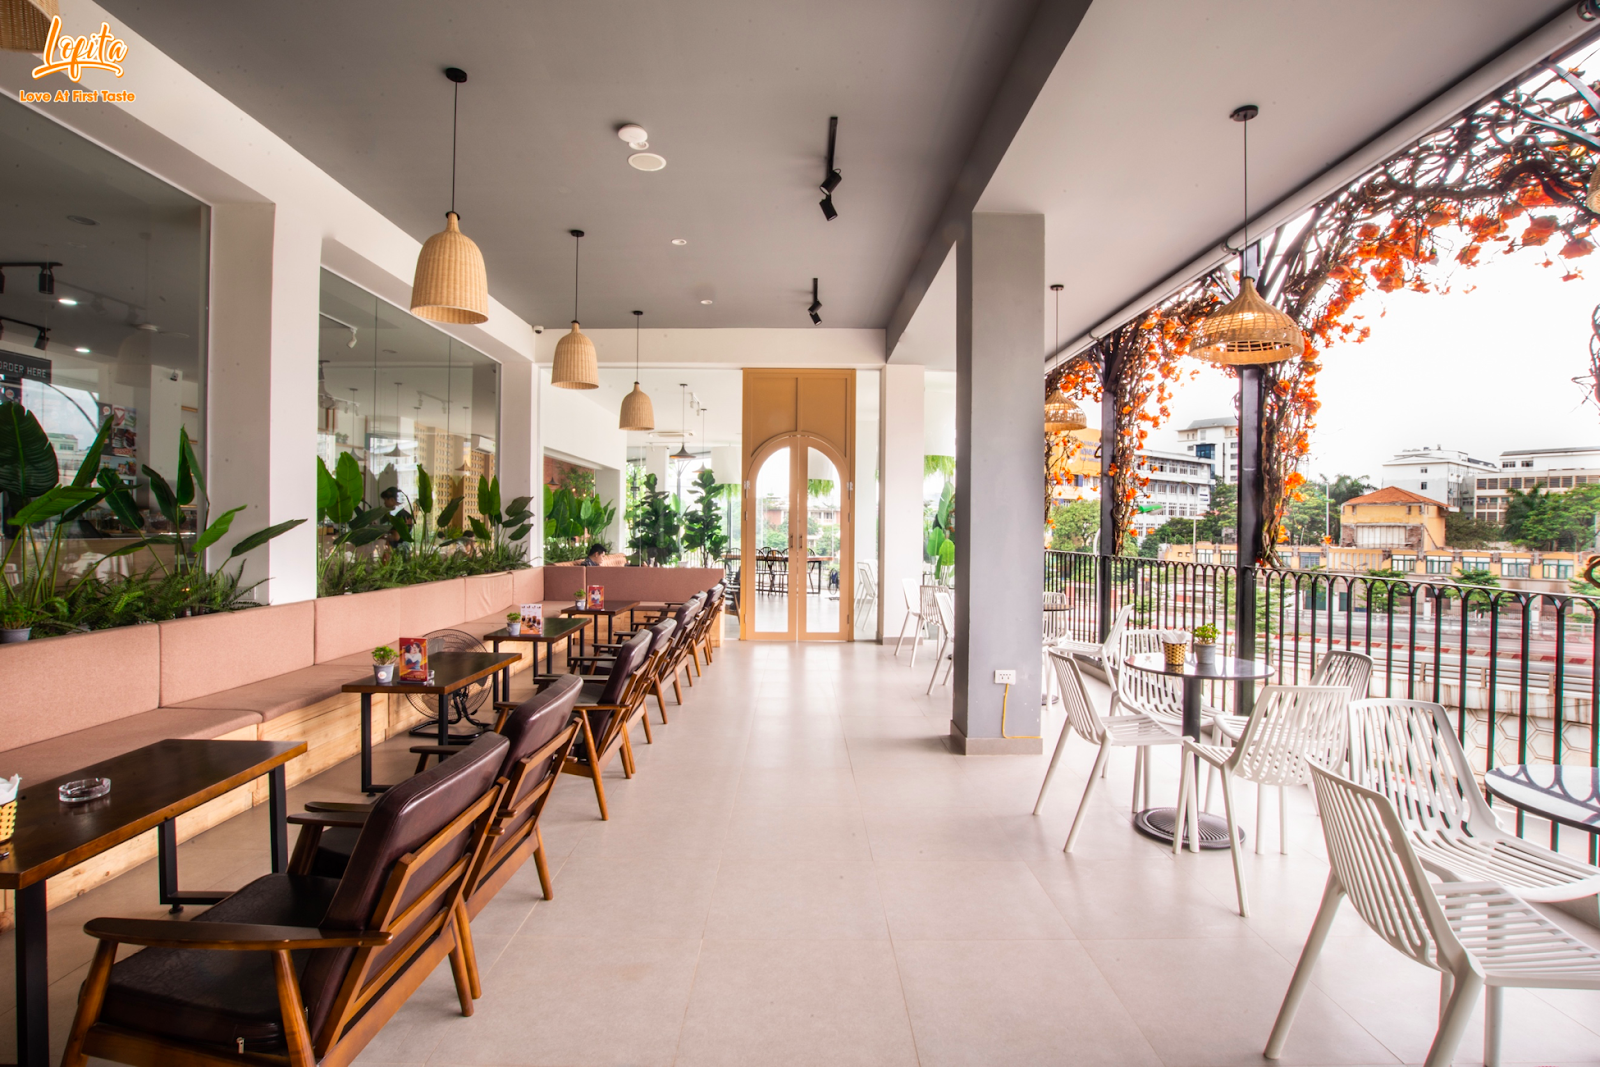 Quán cafe Lofita là nơi lý tưởng để bạn có thể tận hưởng hương vị cà phê đậm đà và trò chuyện cùng bạn bè. Với không gian thiết kế hiện đại và ấm cúng, quán cafe Lofita là địa điểm yêu thích của những ai yêu công nghệ và thích trải nghiệm mới lạ.